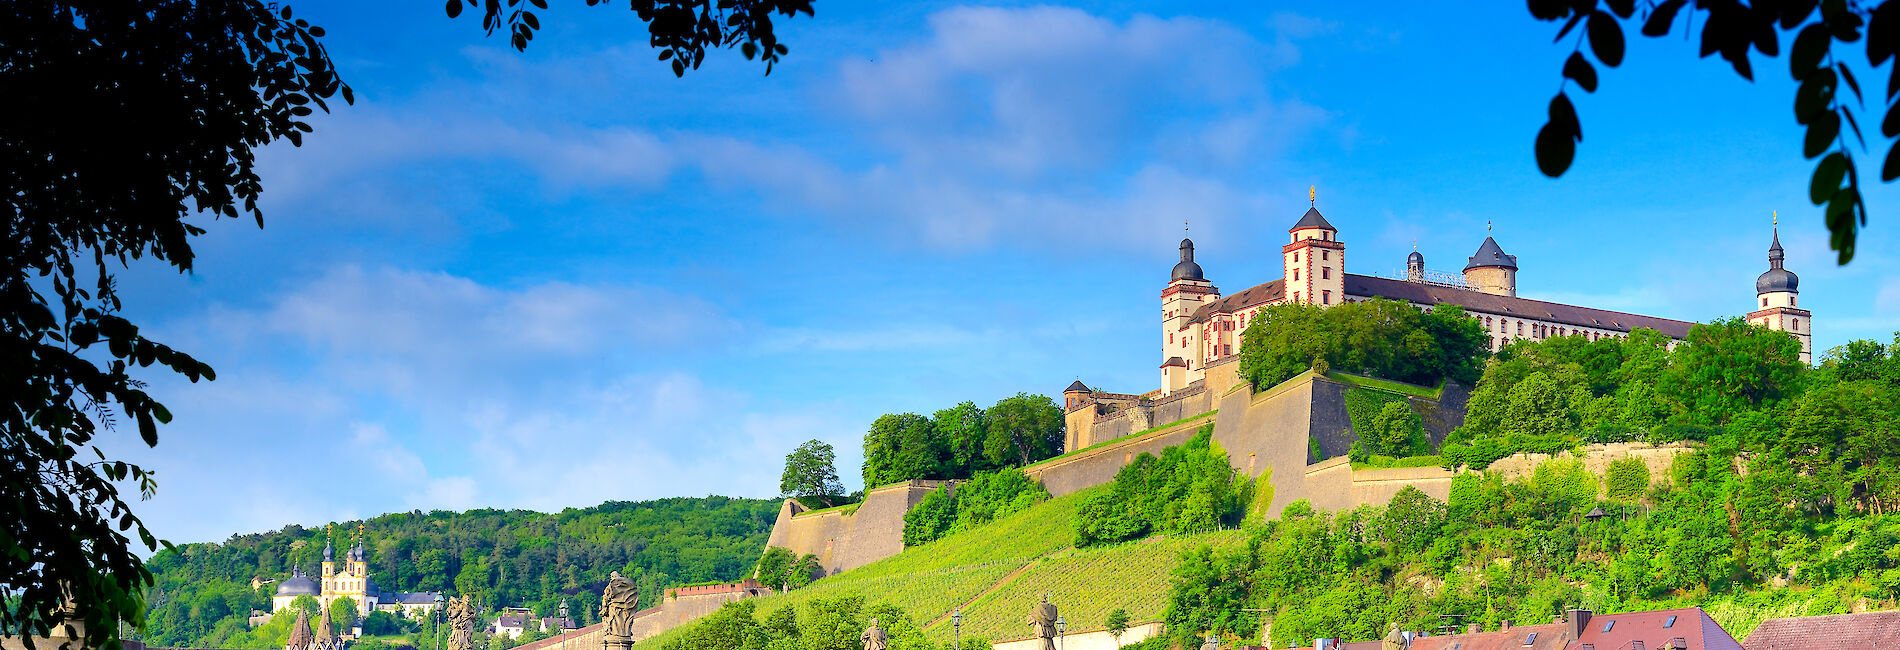 Würzburg city panorama